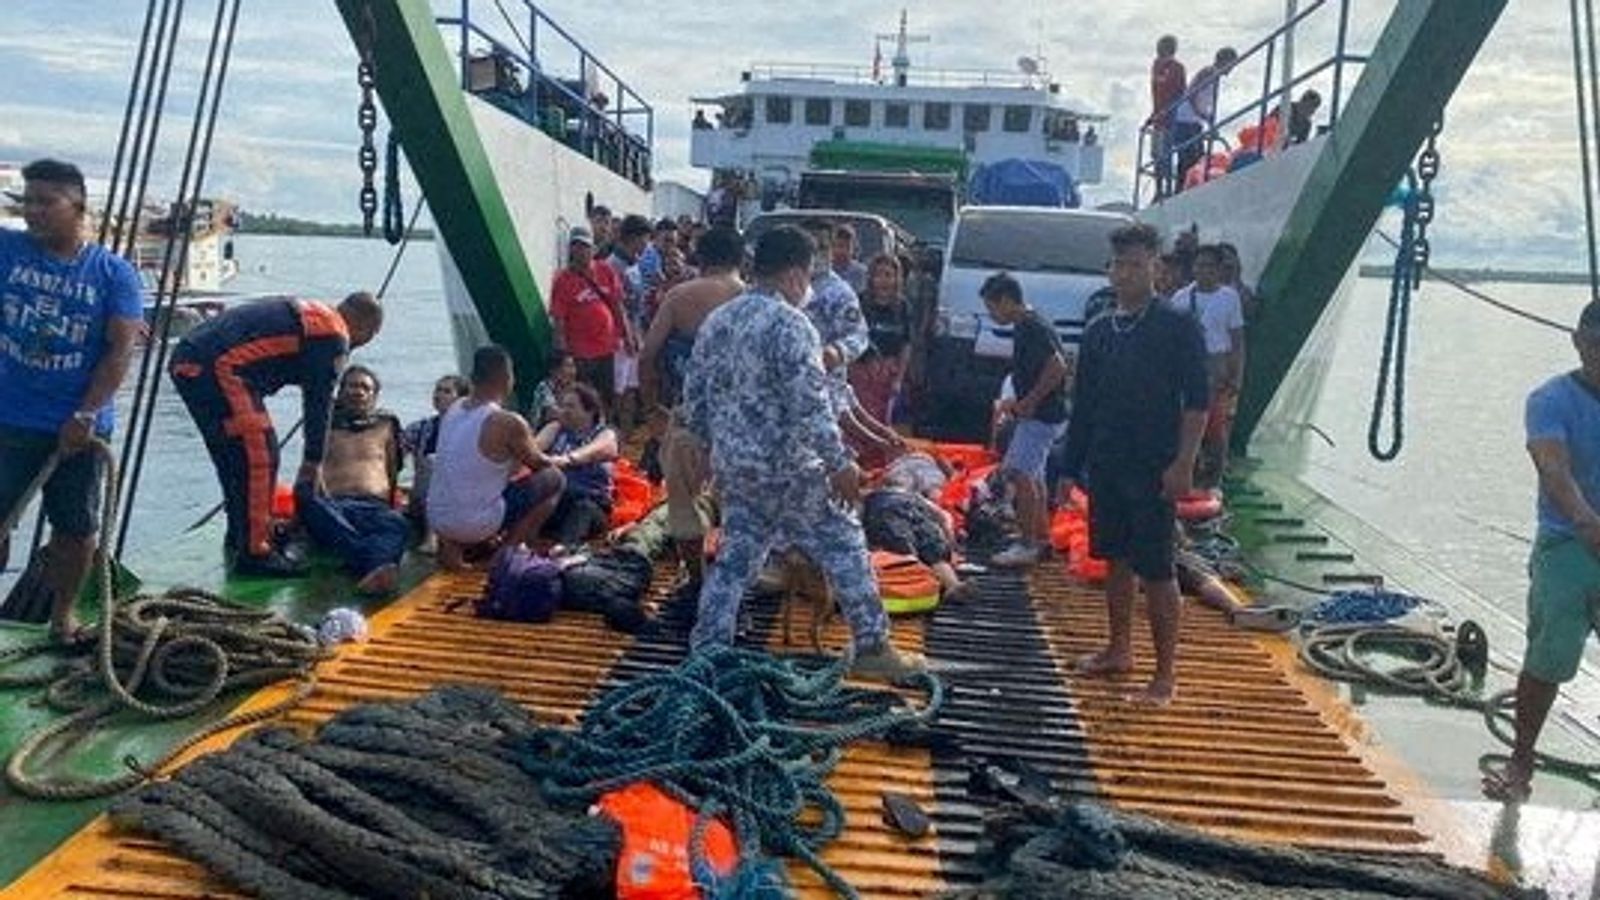 Incendio traghetto filippino: almeno sette morti, oltre 120 soccorsi dopo l’incendio |  notizie dal mondo